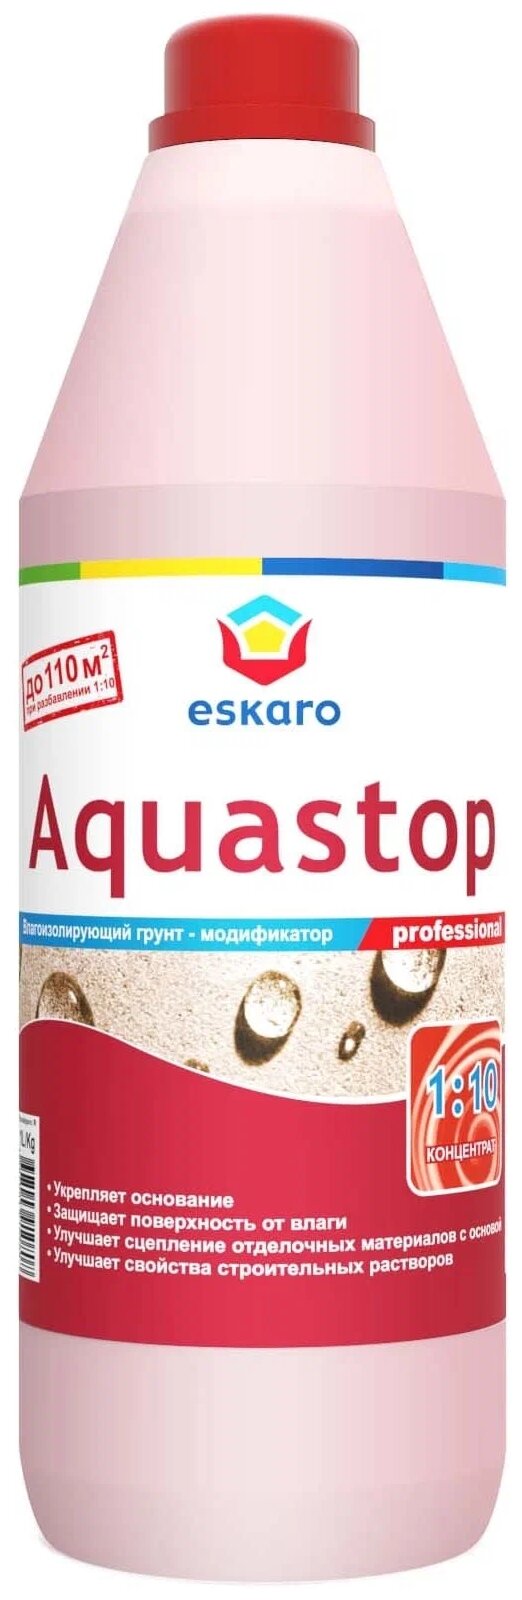 Грунтовка Eskaro Aquastop Professional